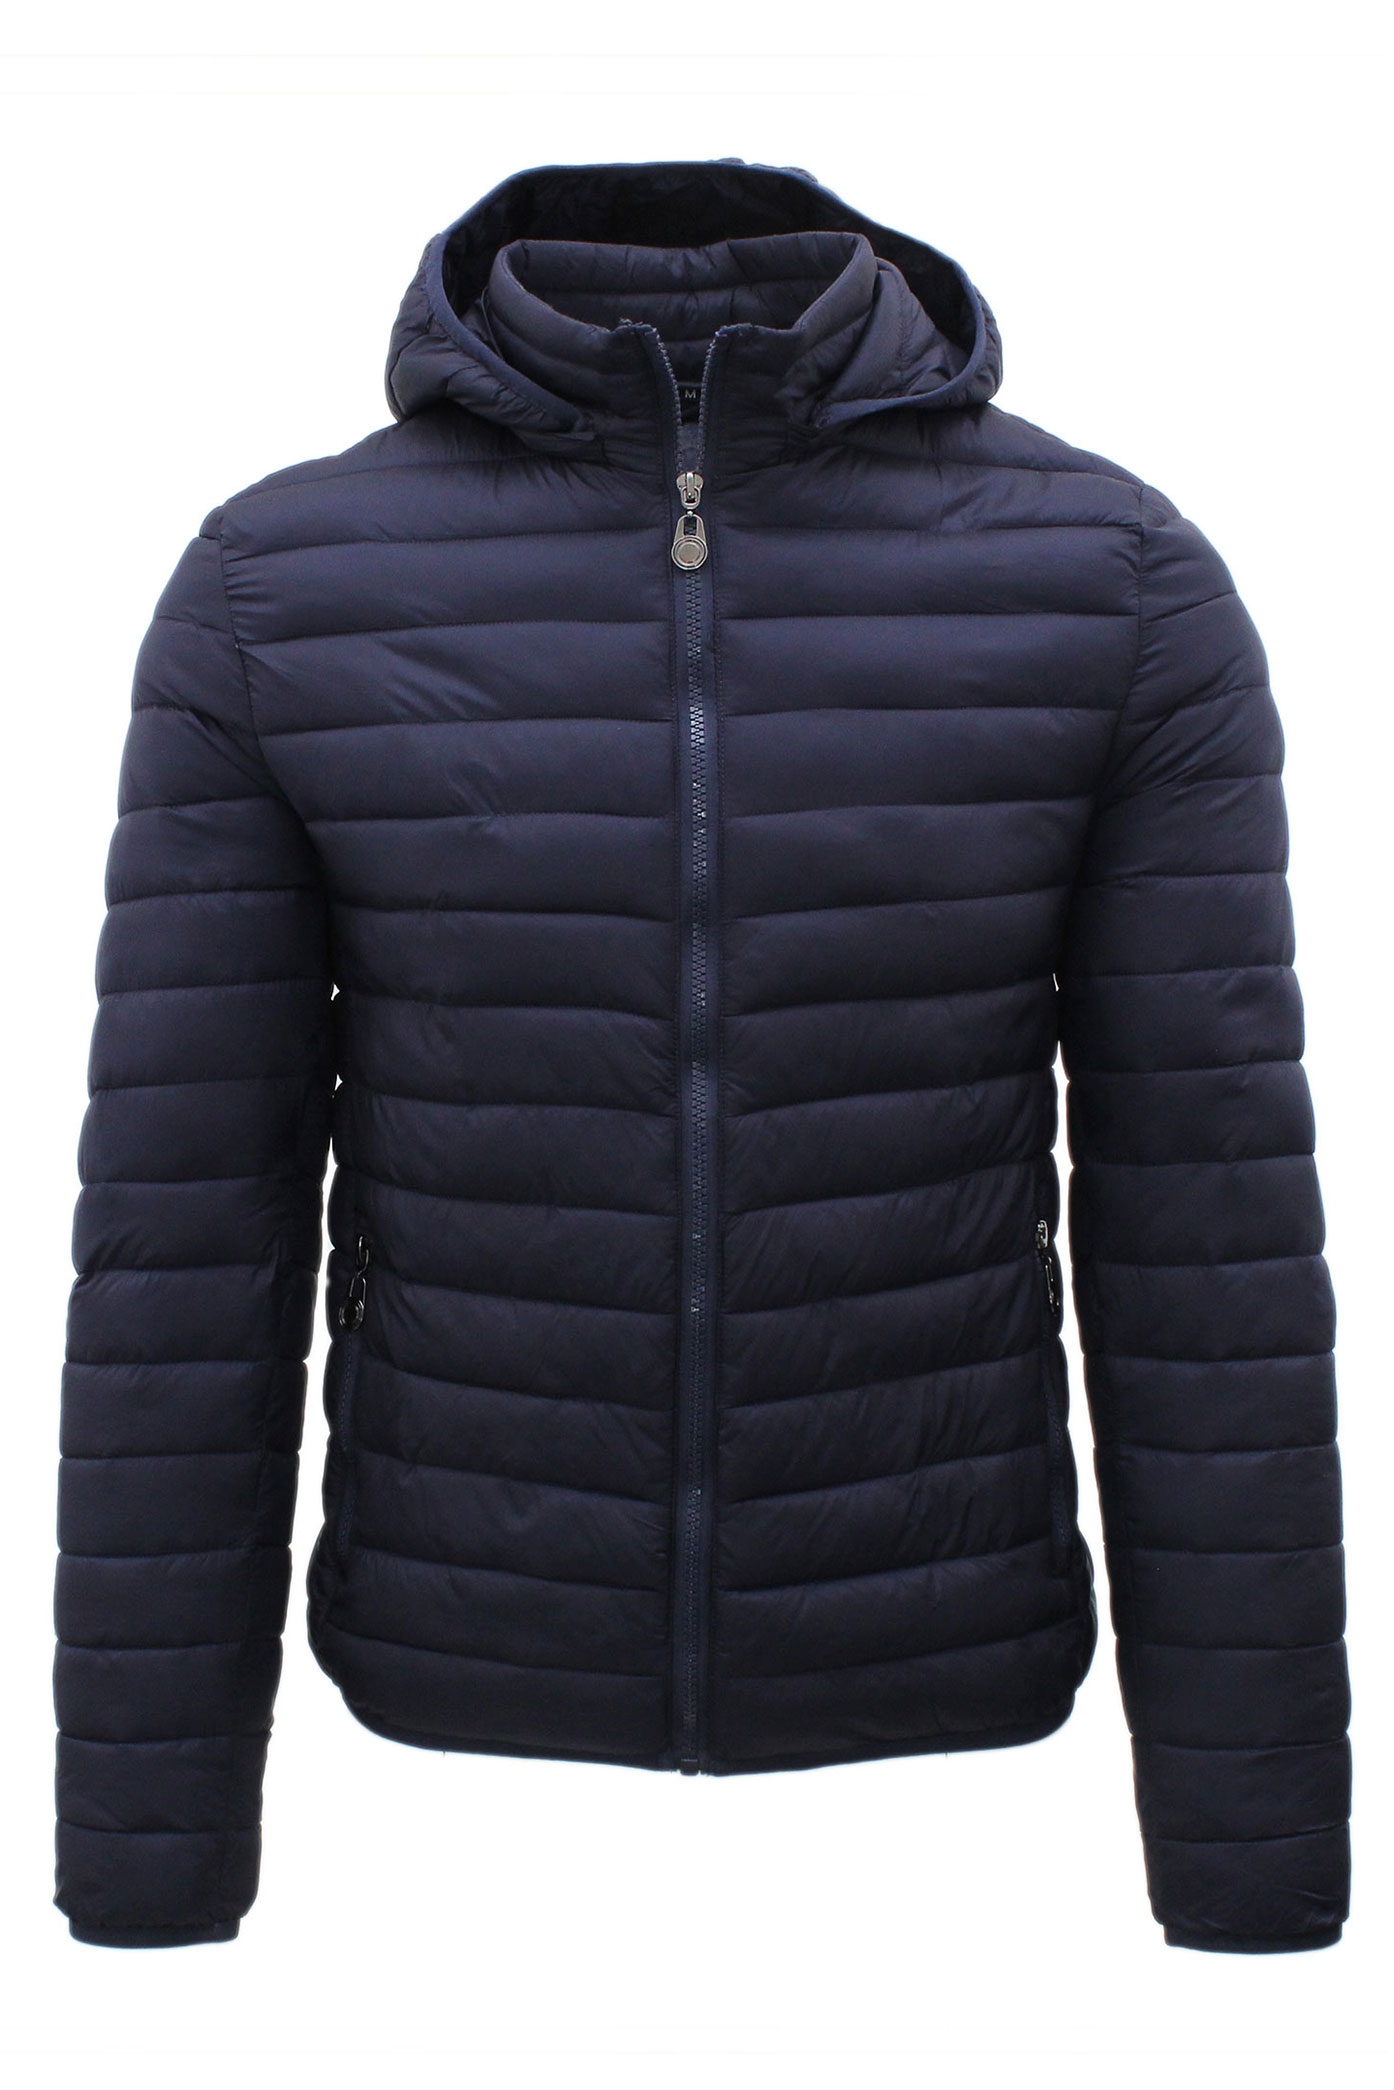 giacca funzionale invernale BIKETAFUWY Piumino da uomo leggero per le mezze stagioni foderato trapuntato con cappuccio con colletto alto 